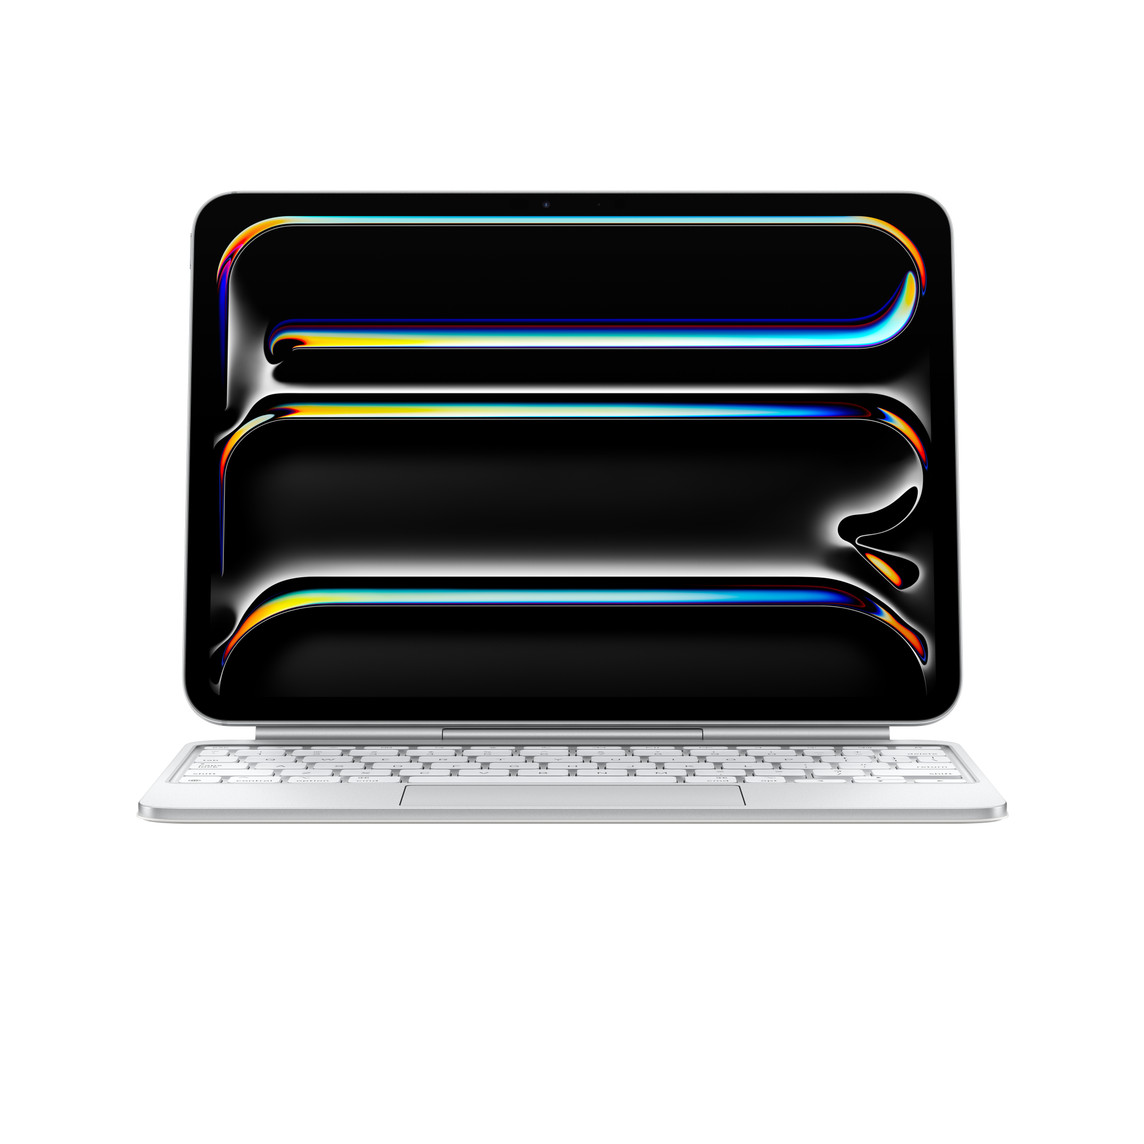 Fekvő tájolású iPad Pro egy Magic Keyboardhoz rögzítve, az iPad Pro benyúlik a billentyűk fölötti térbe, fehér